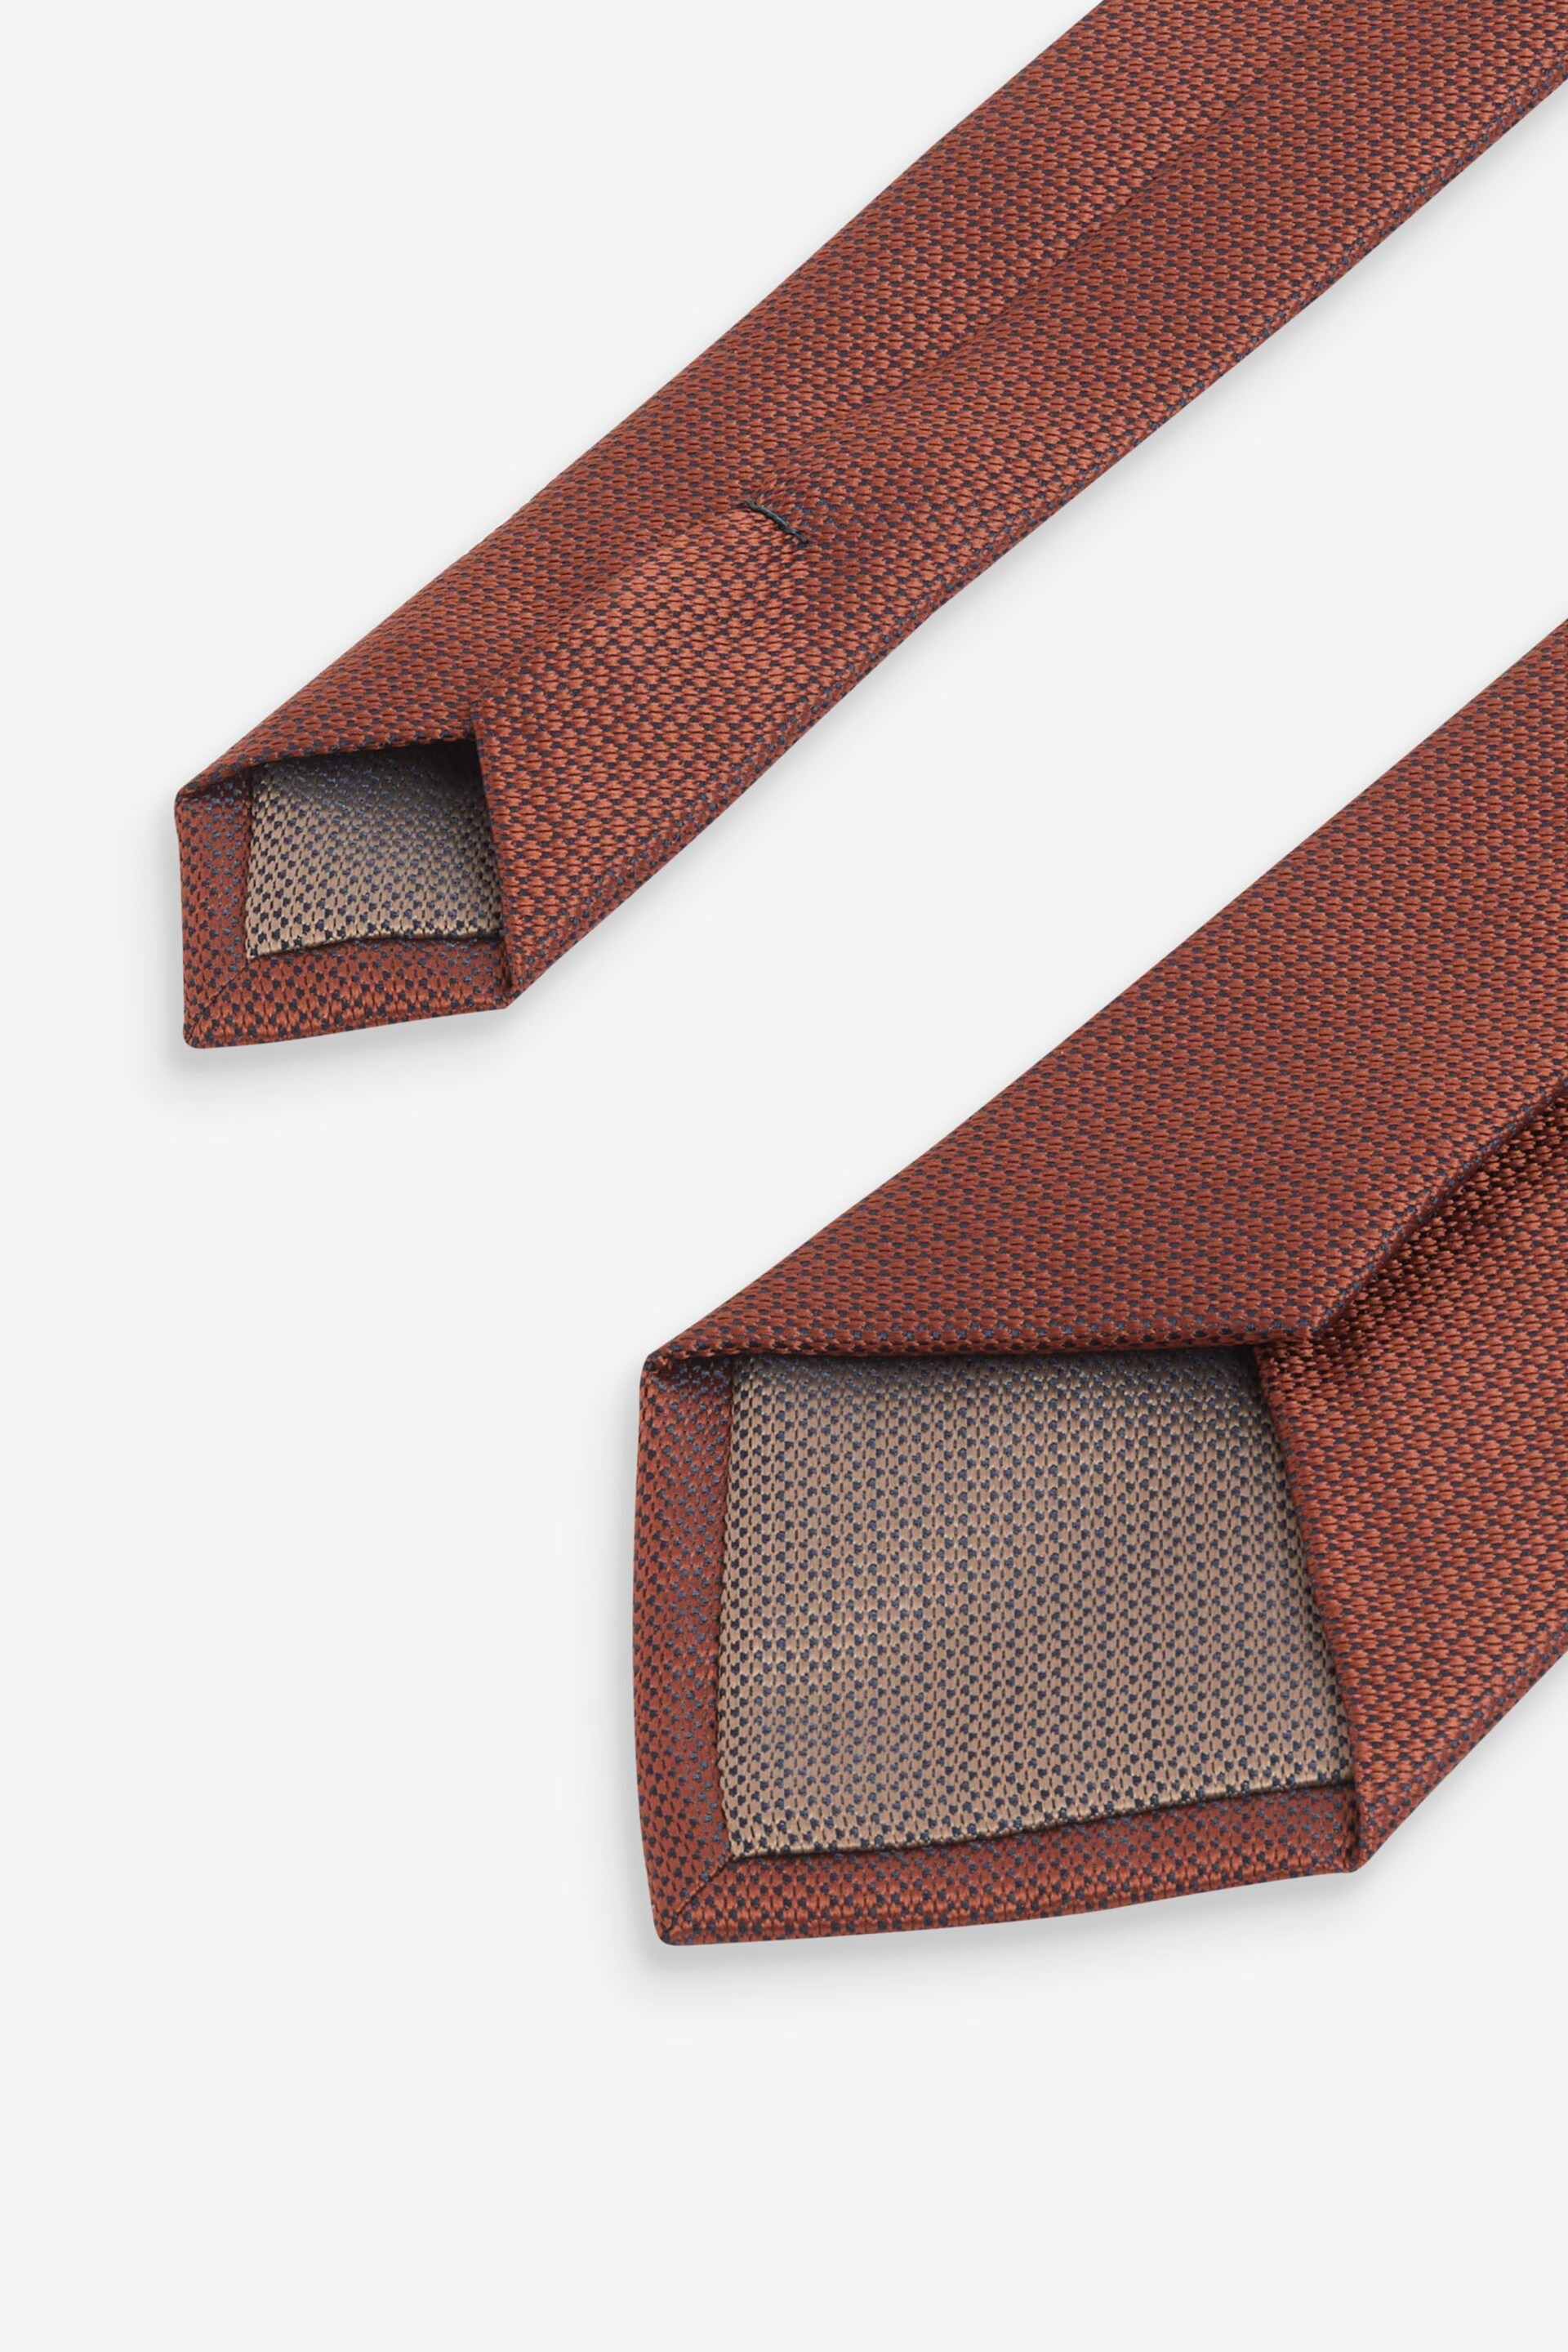 Neutral Brown/Rust Orange 2 Pack Textured Ties And Pocket Sqaure Set - Image 5 of 8